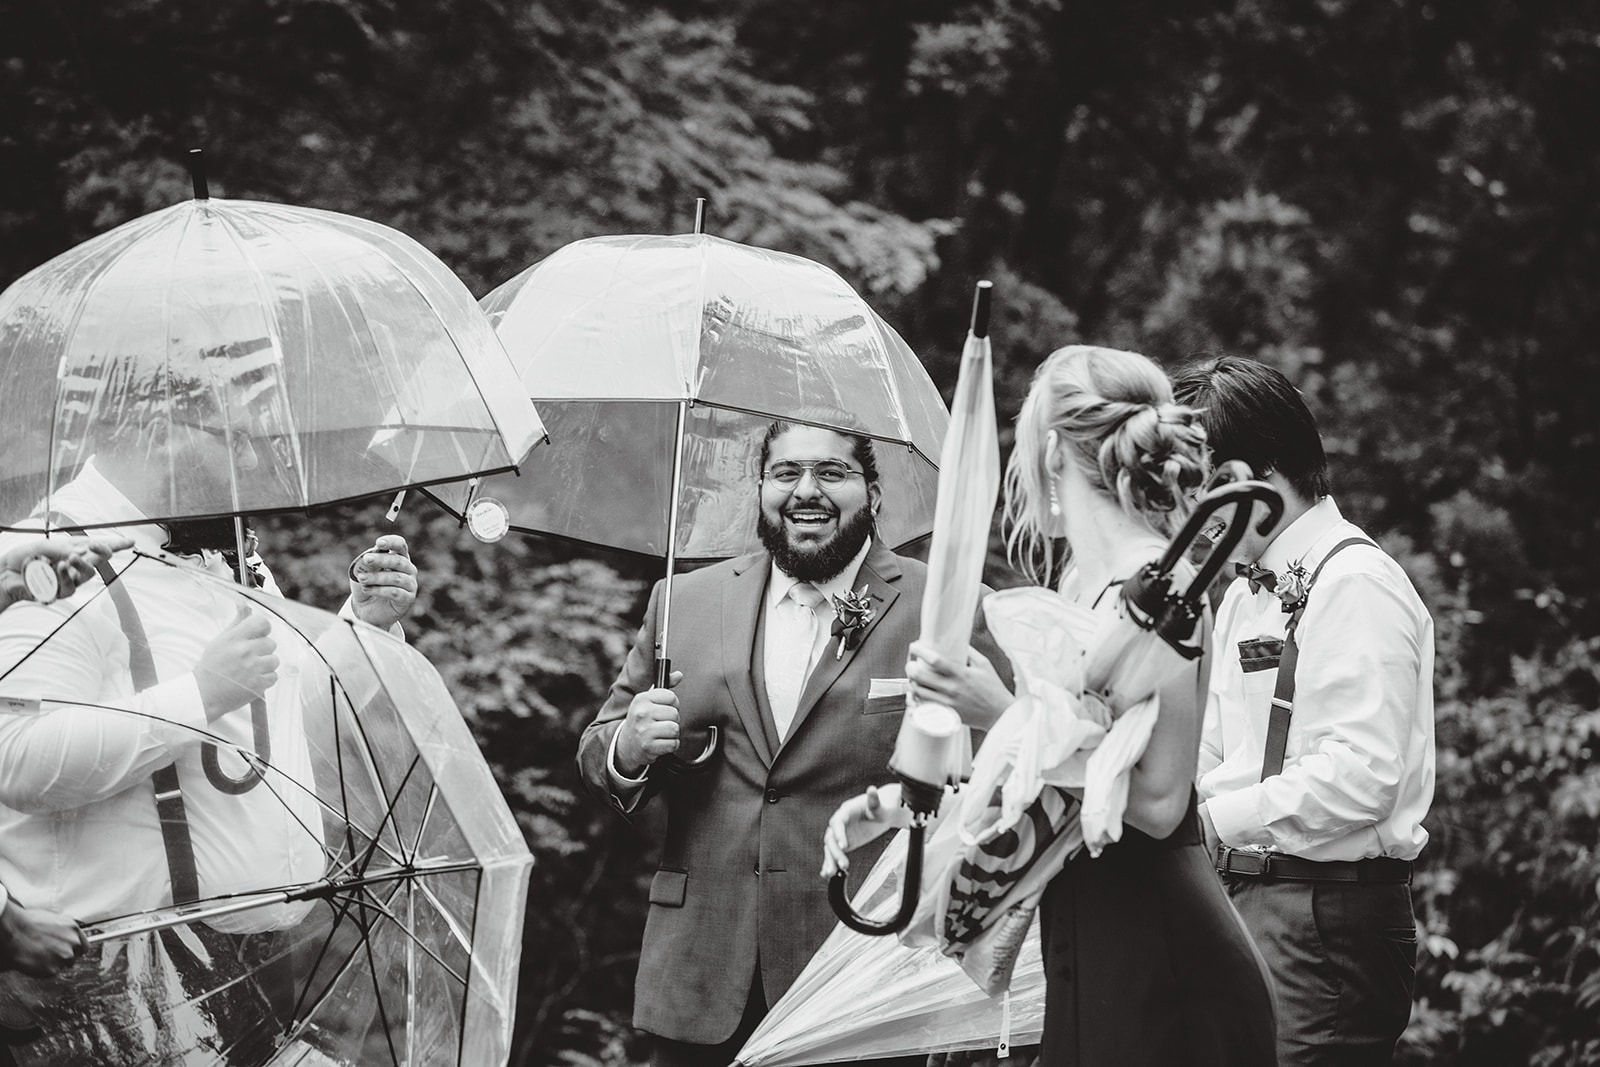 Wedding party with umbrellas